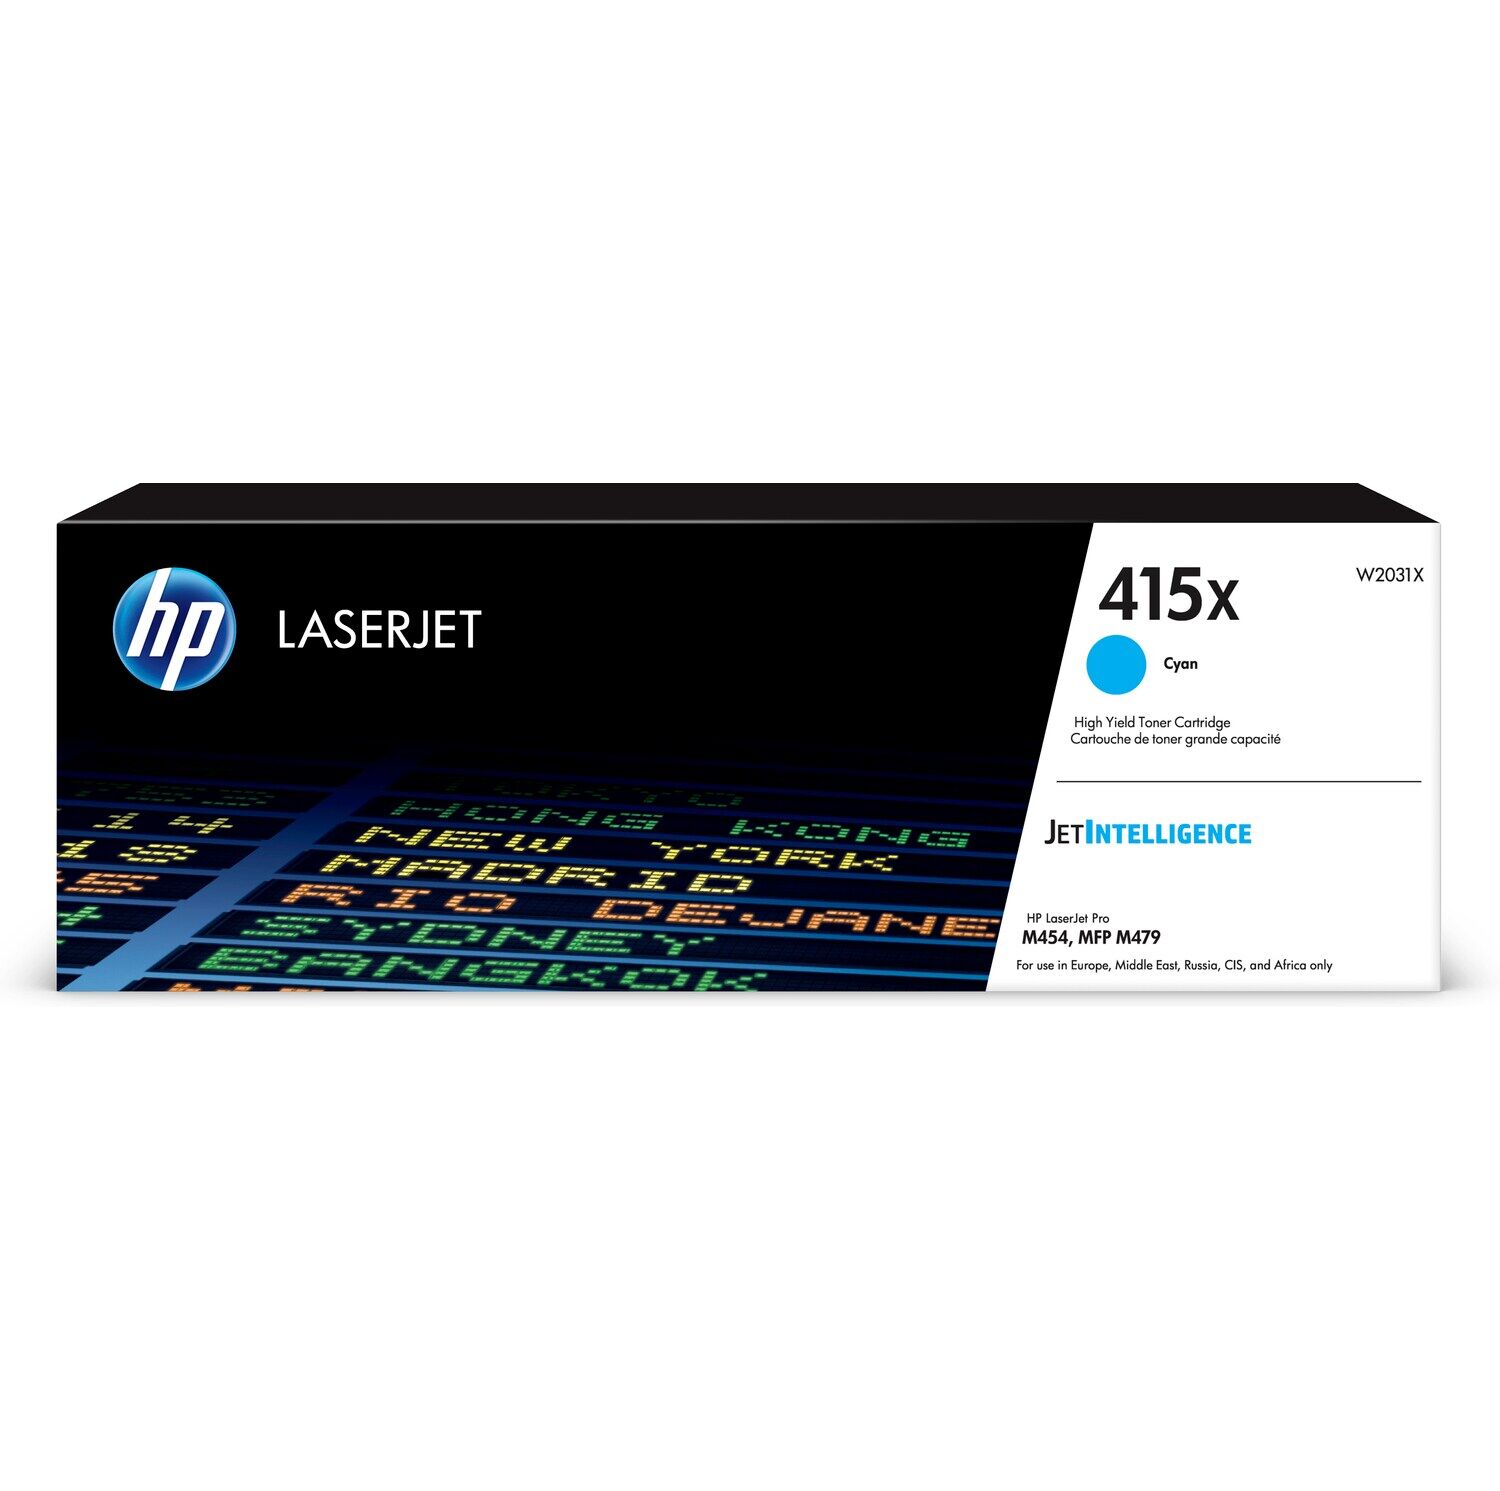 Картридж для печати HP Картридж HP 415X W2031X вид печати лазерный, цвет Голубой, емкость